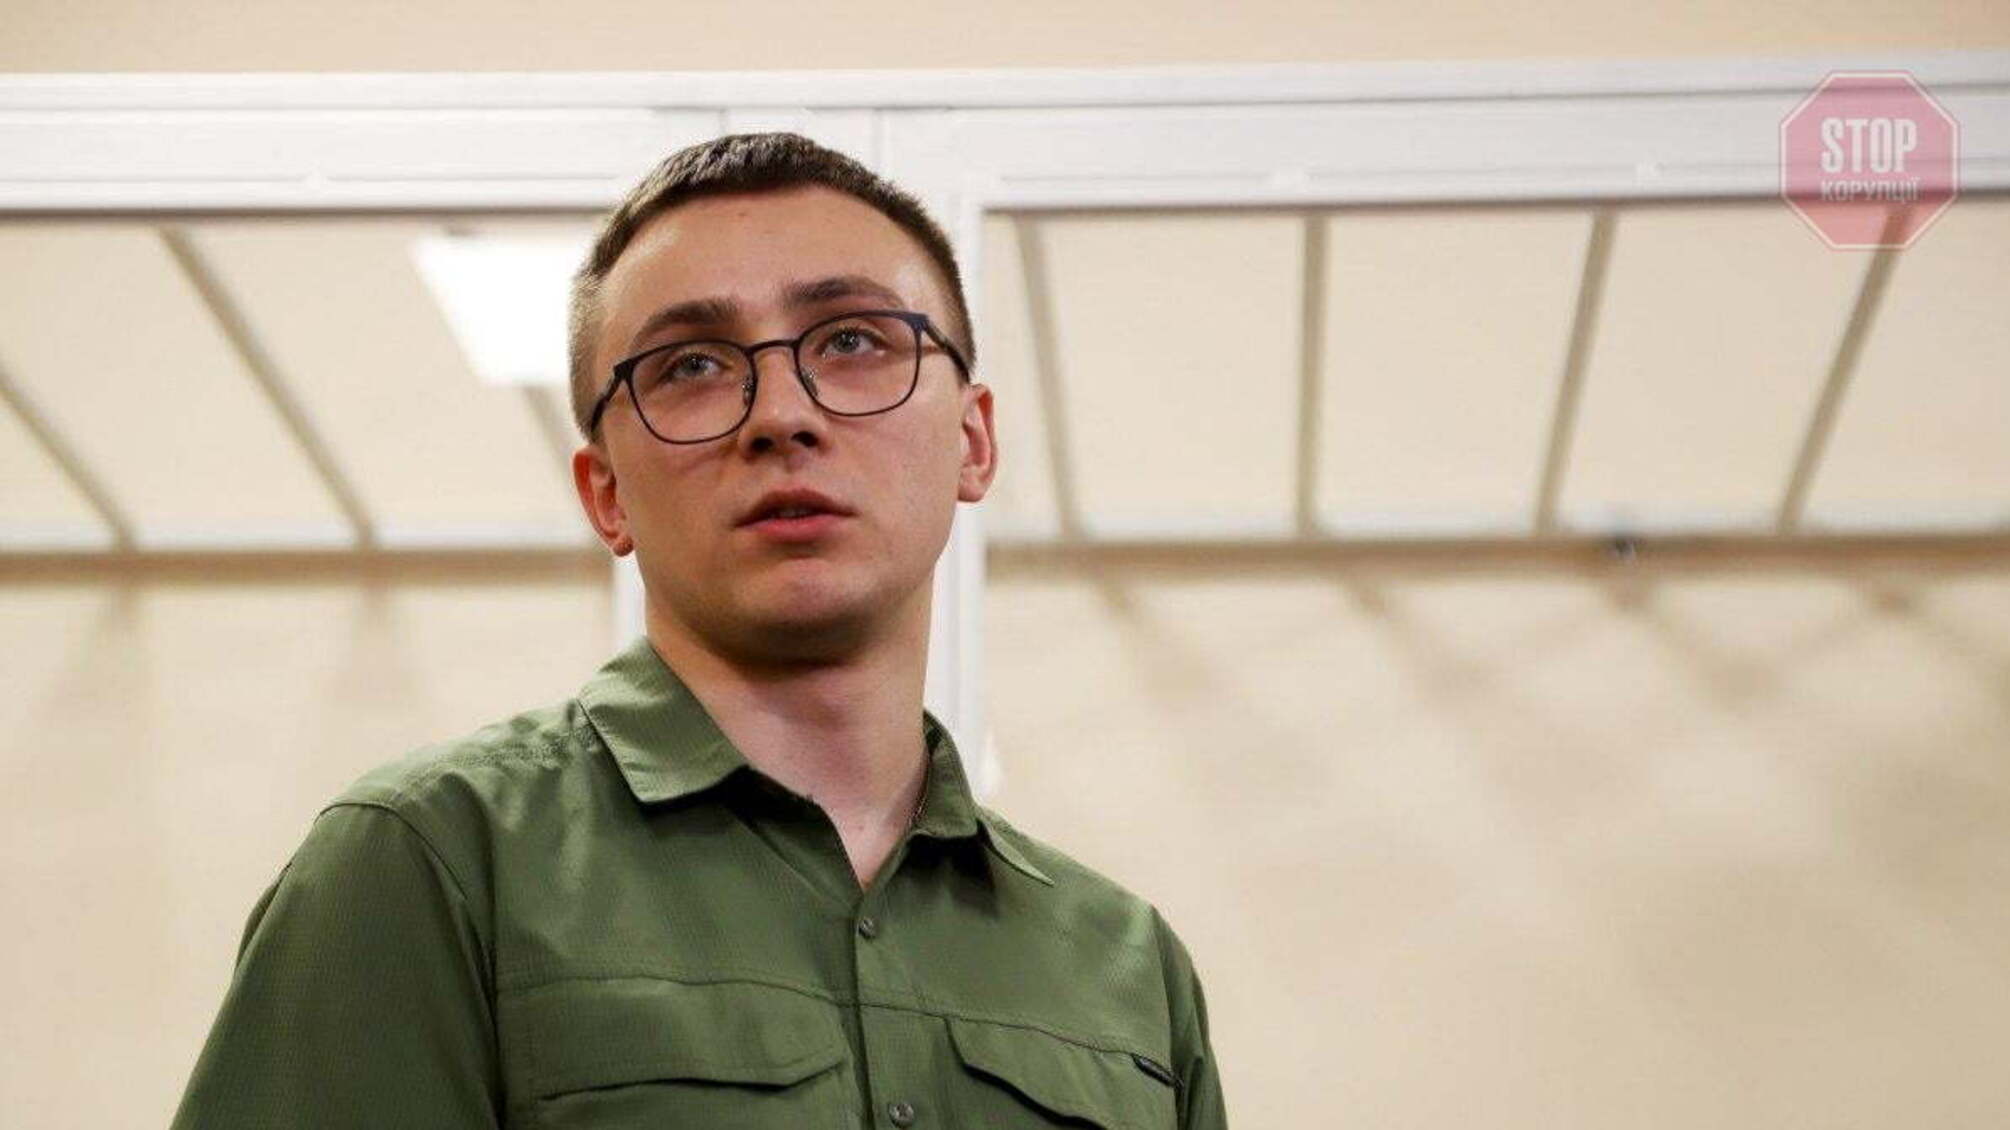 Одеський суд залишив активіста Стерненка під вартою